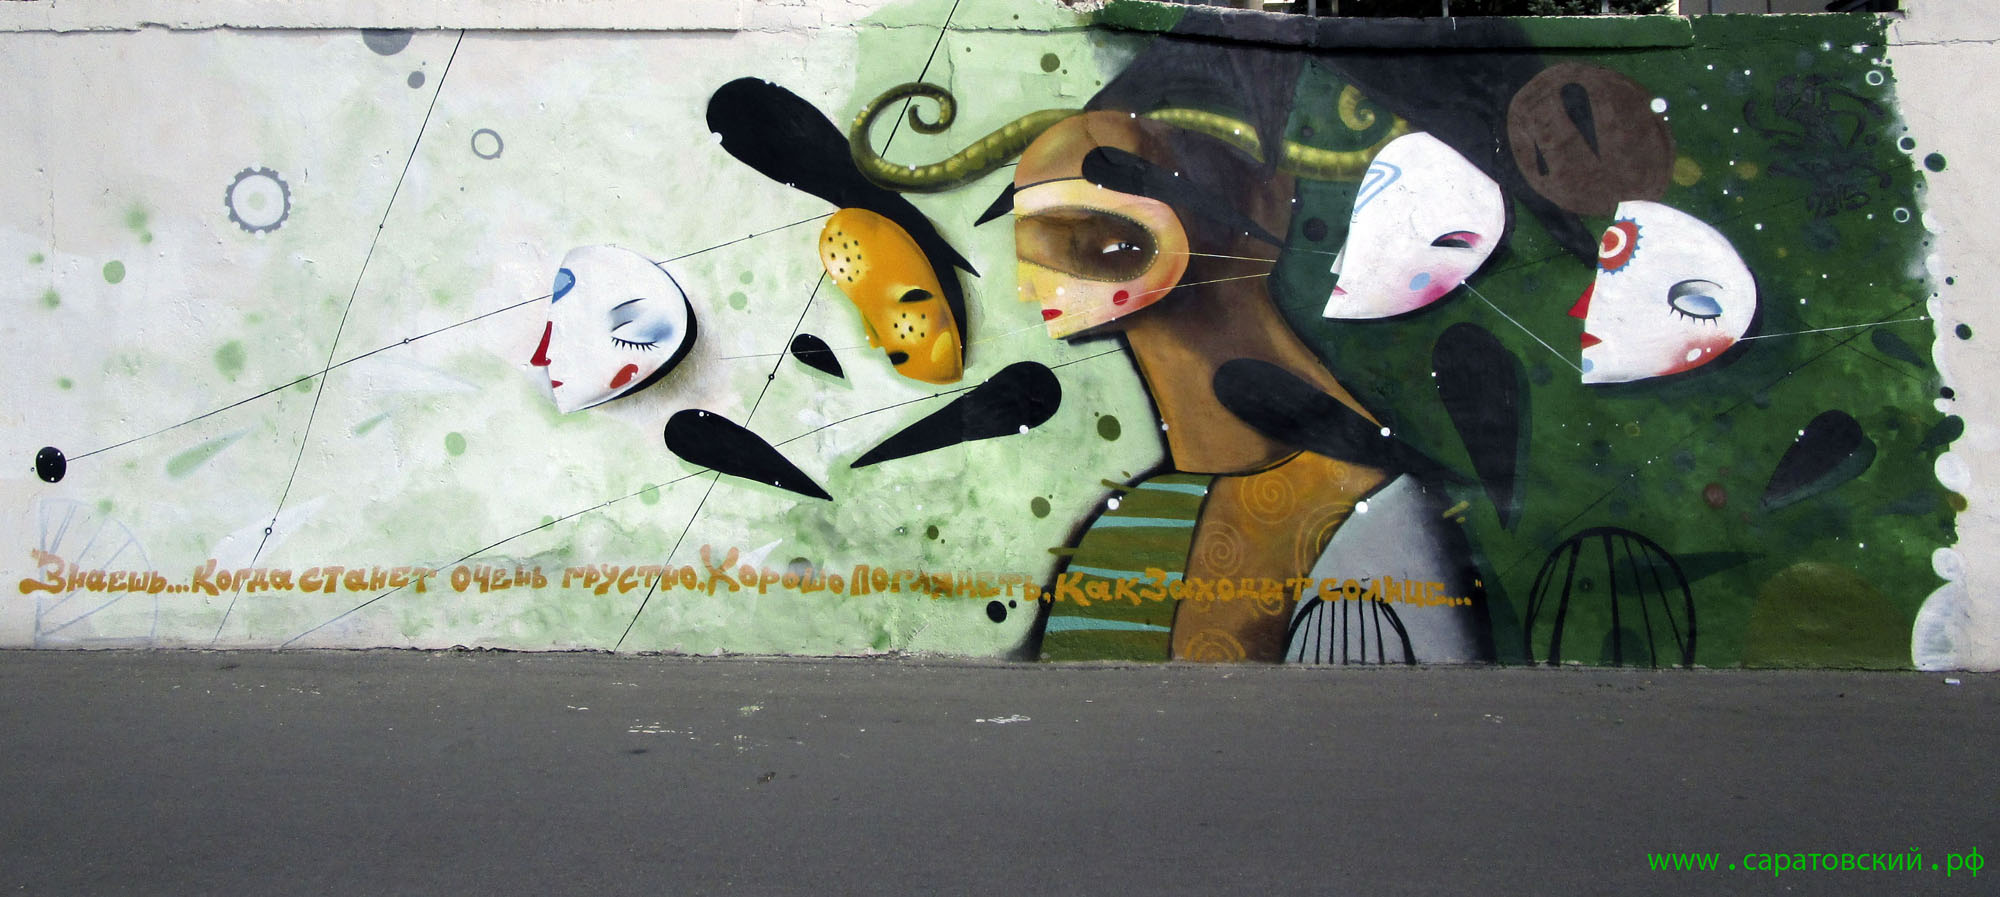 Saratov waterfront graffiti: Saratov Young Spectator's Theatre, Russia